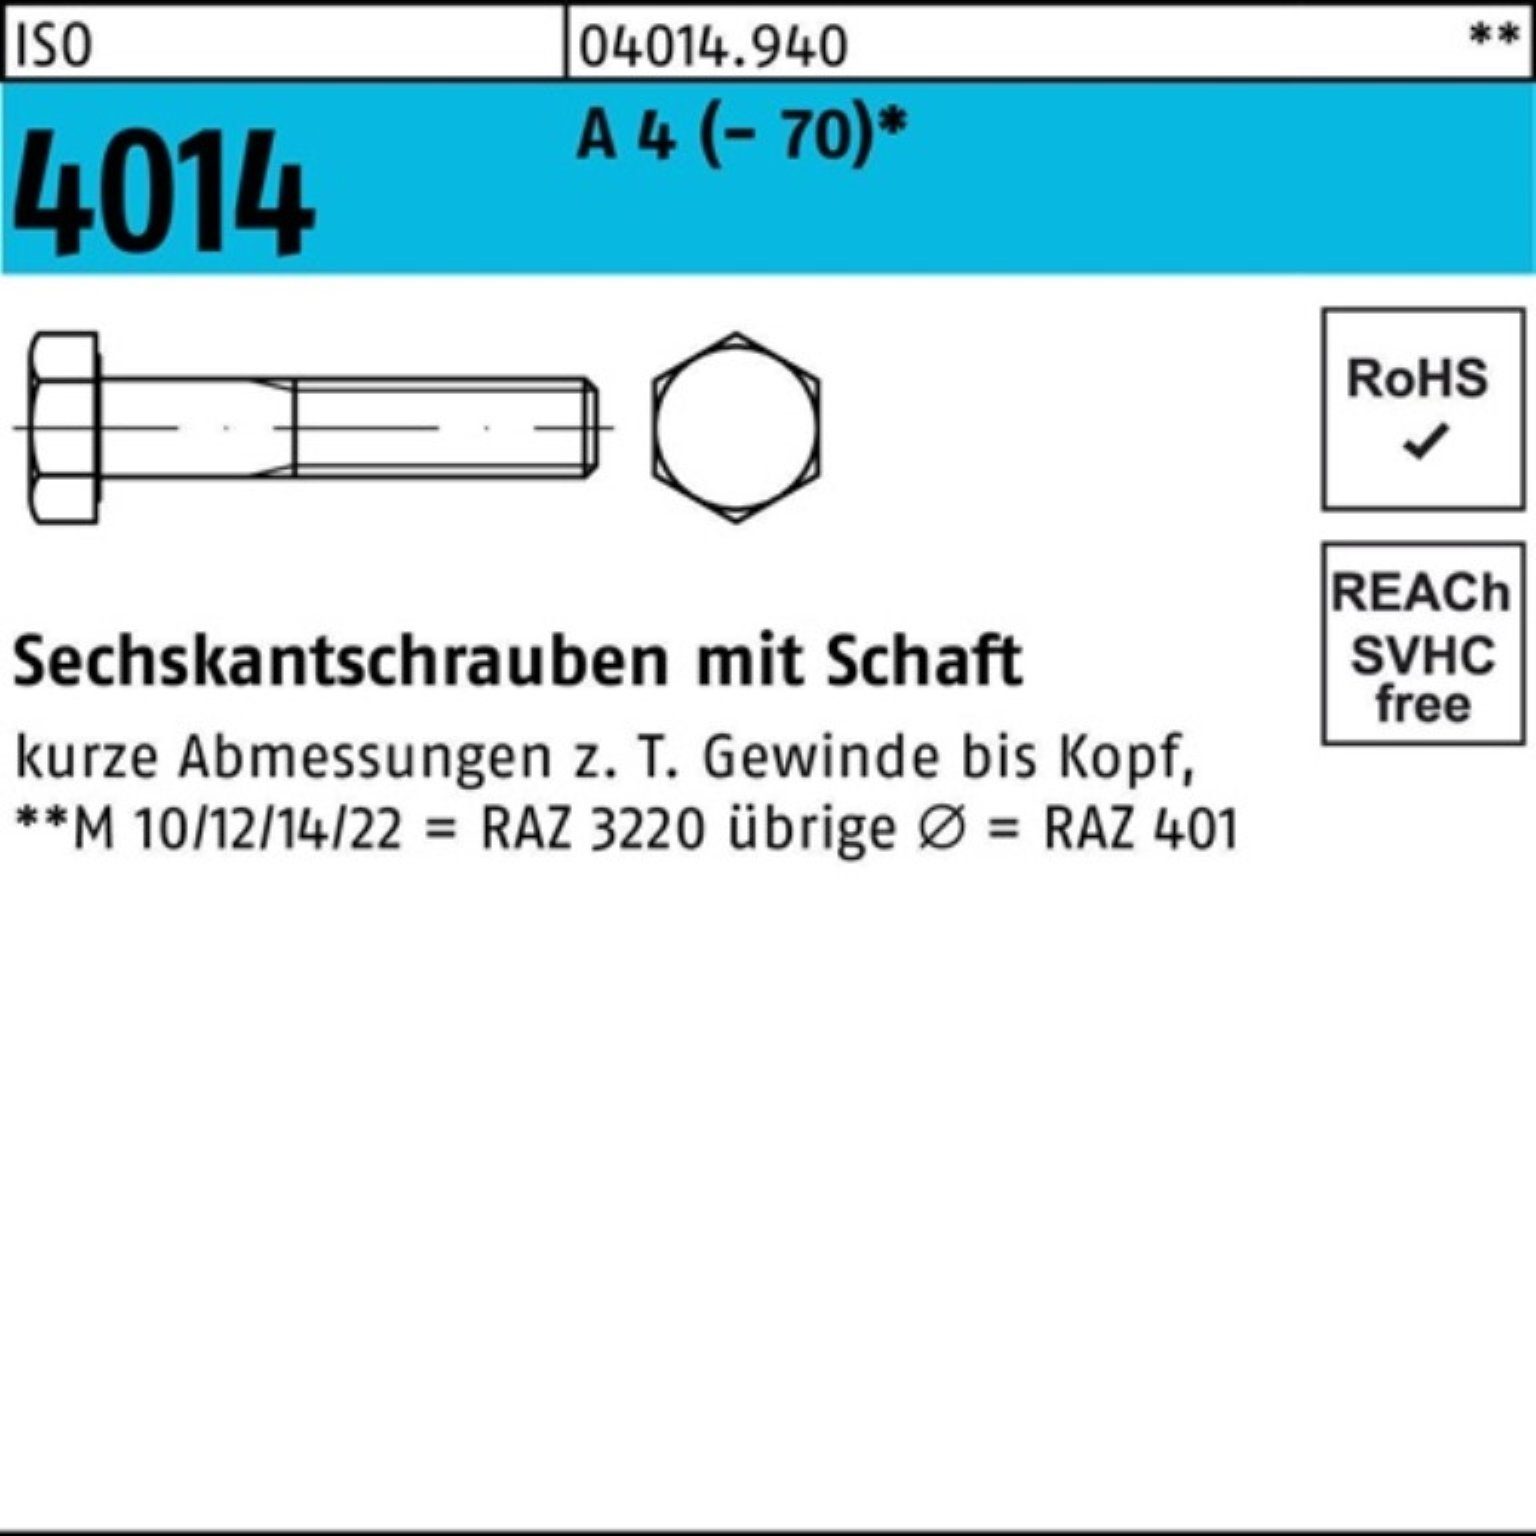 Bufab Sechskantschraube 100er Pack Sechskantschraube ISO 4014 Schaft M8x 75 A 4 (70) 100 St